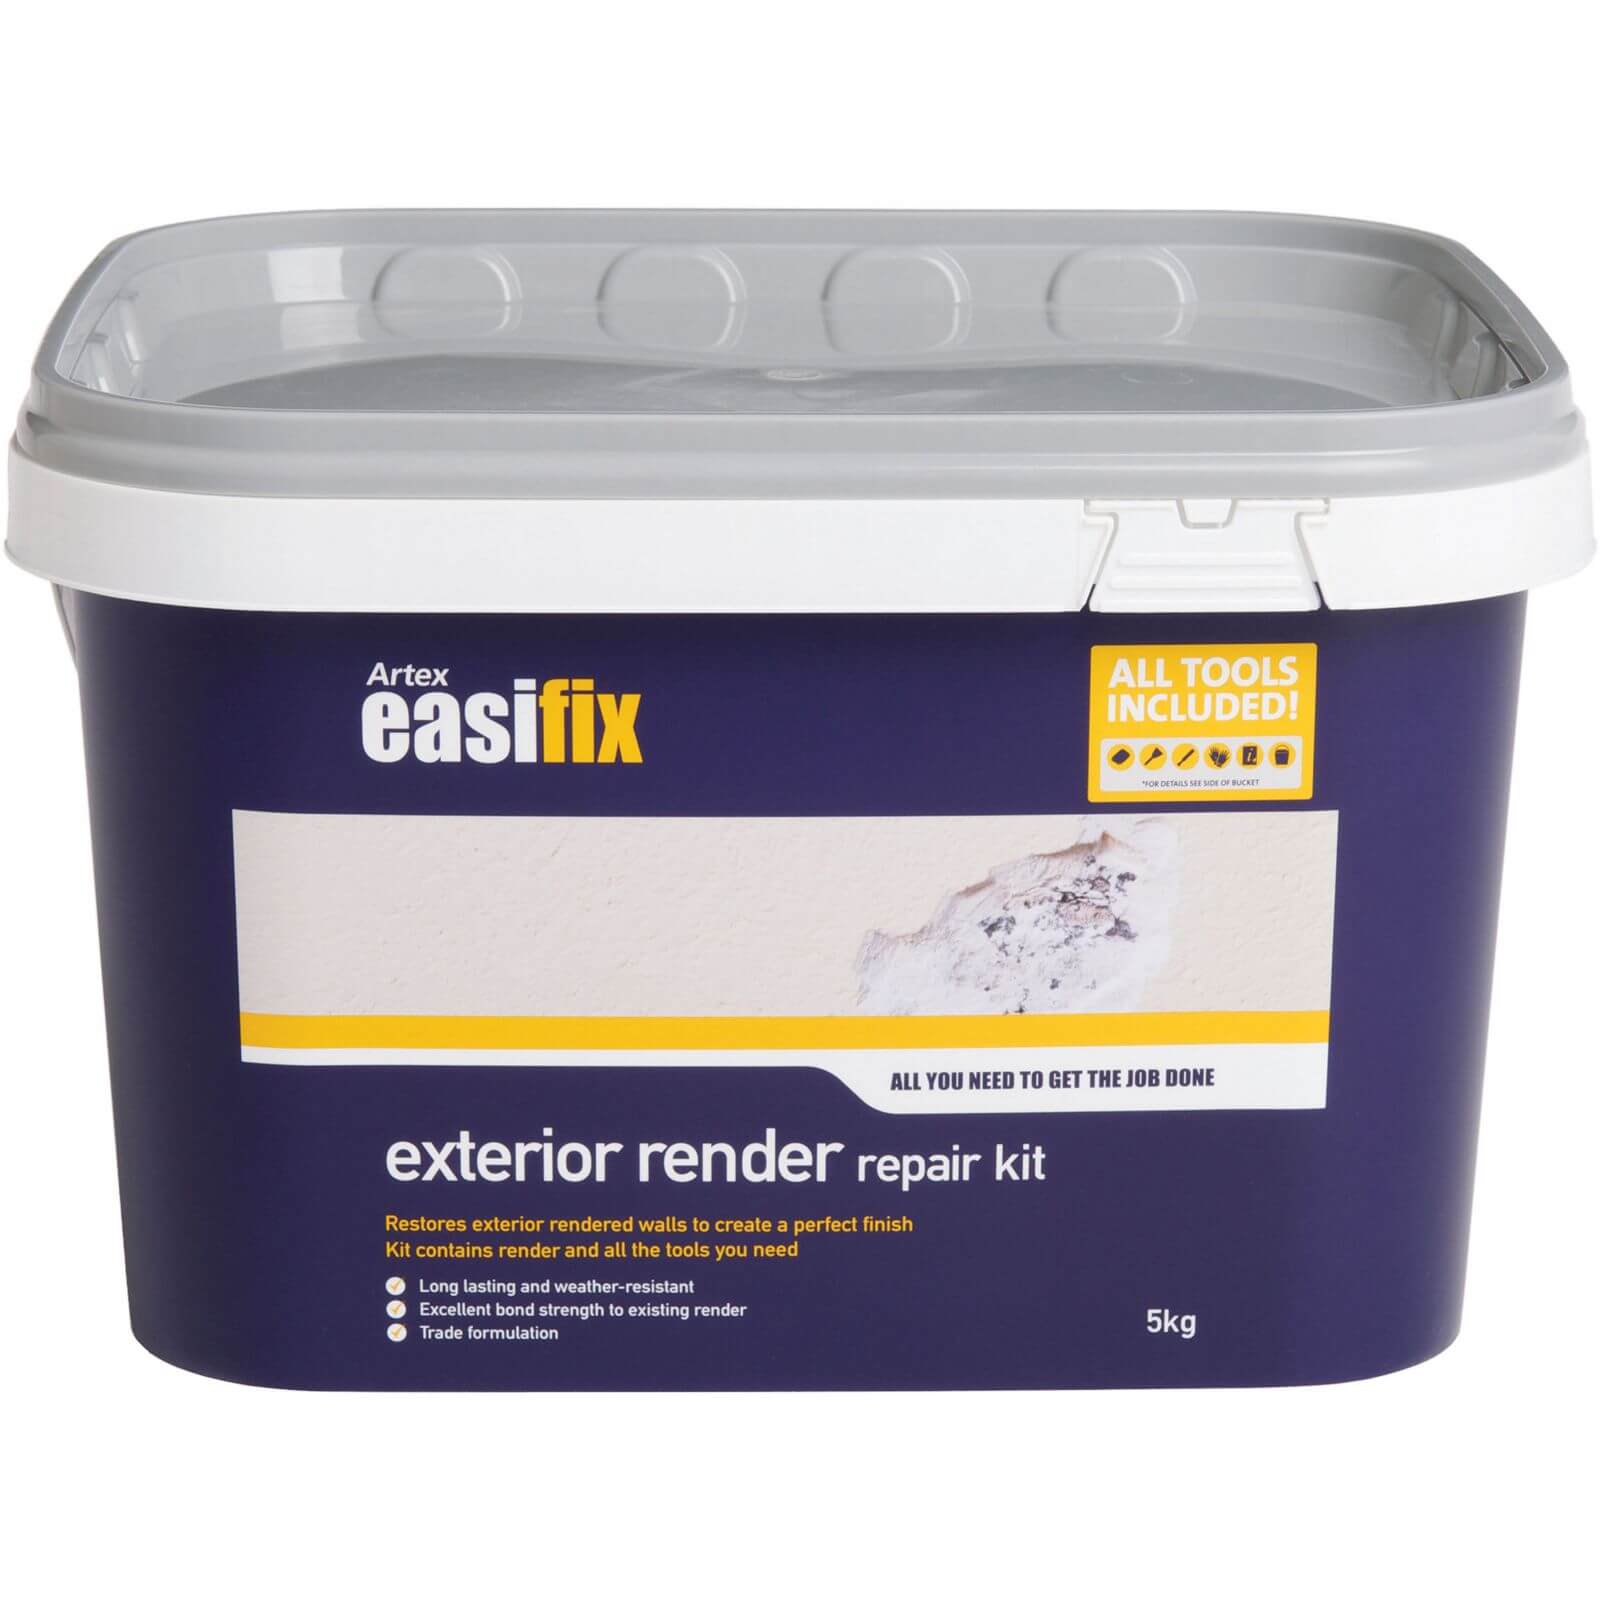 Artex Easifix Exterior Render Repair Kit